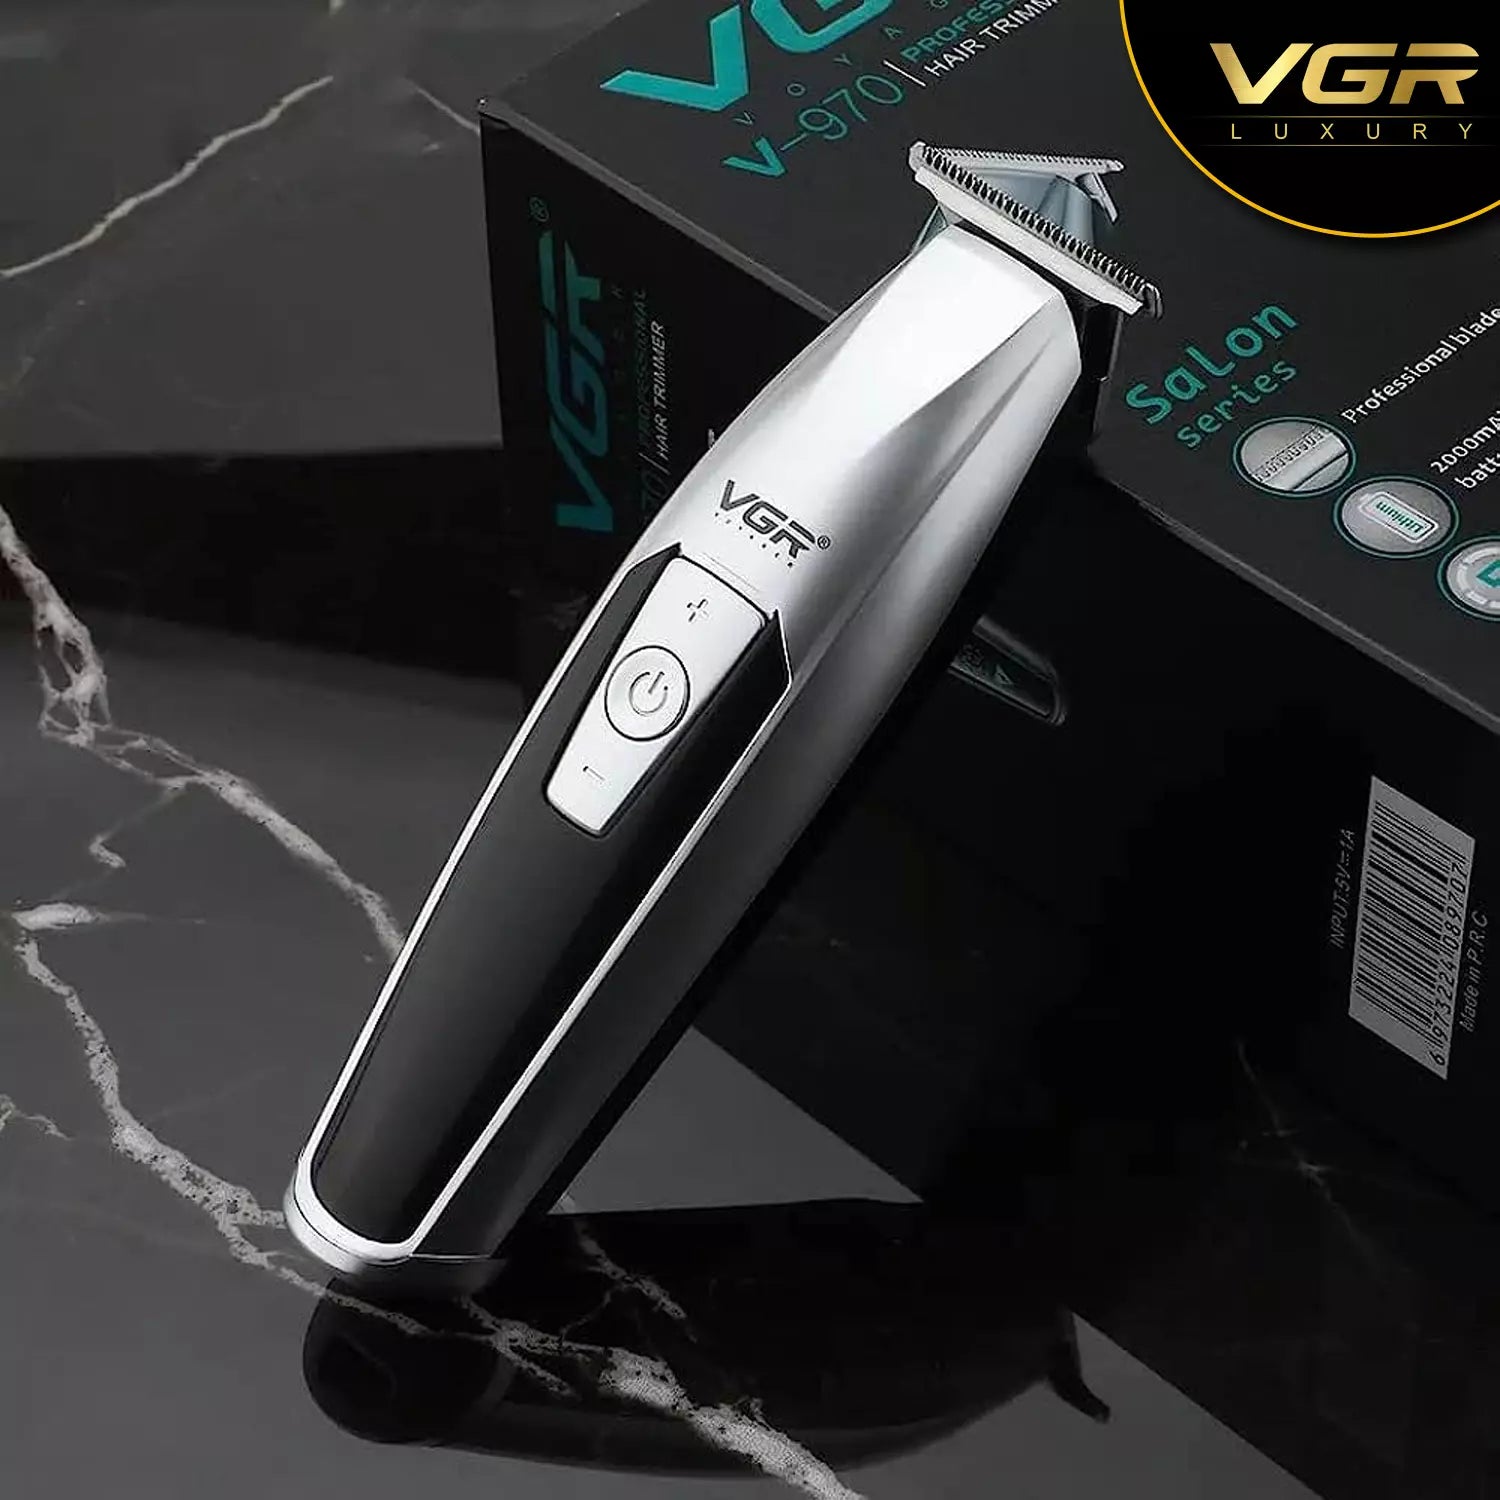 VGR, VGRindia, VGRofficial, VGR V-970